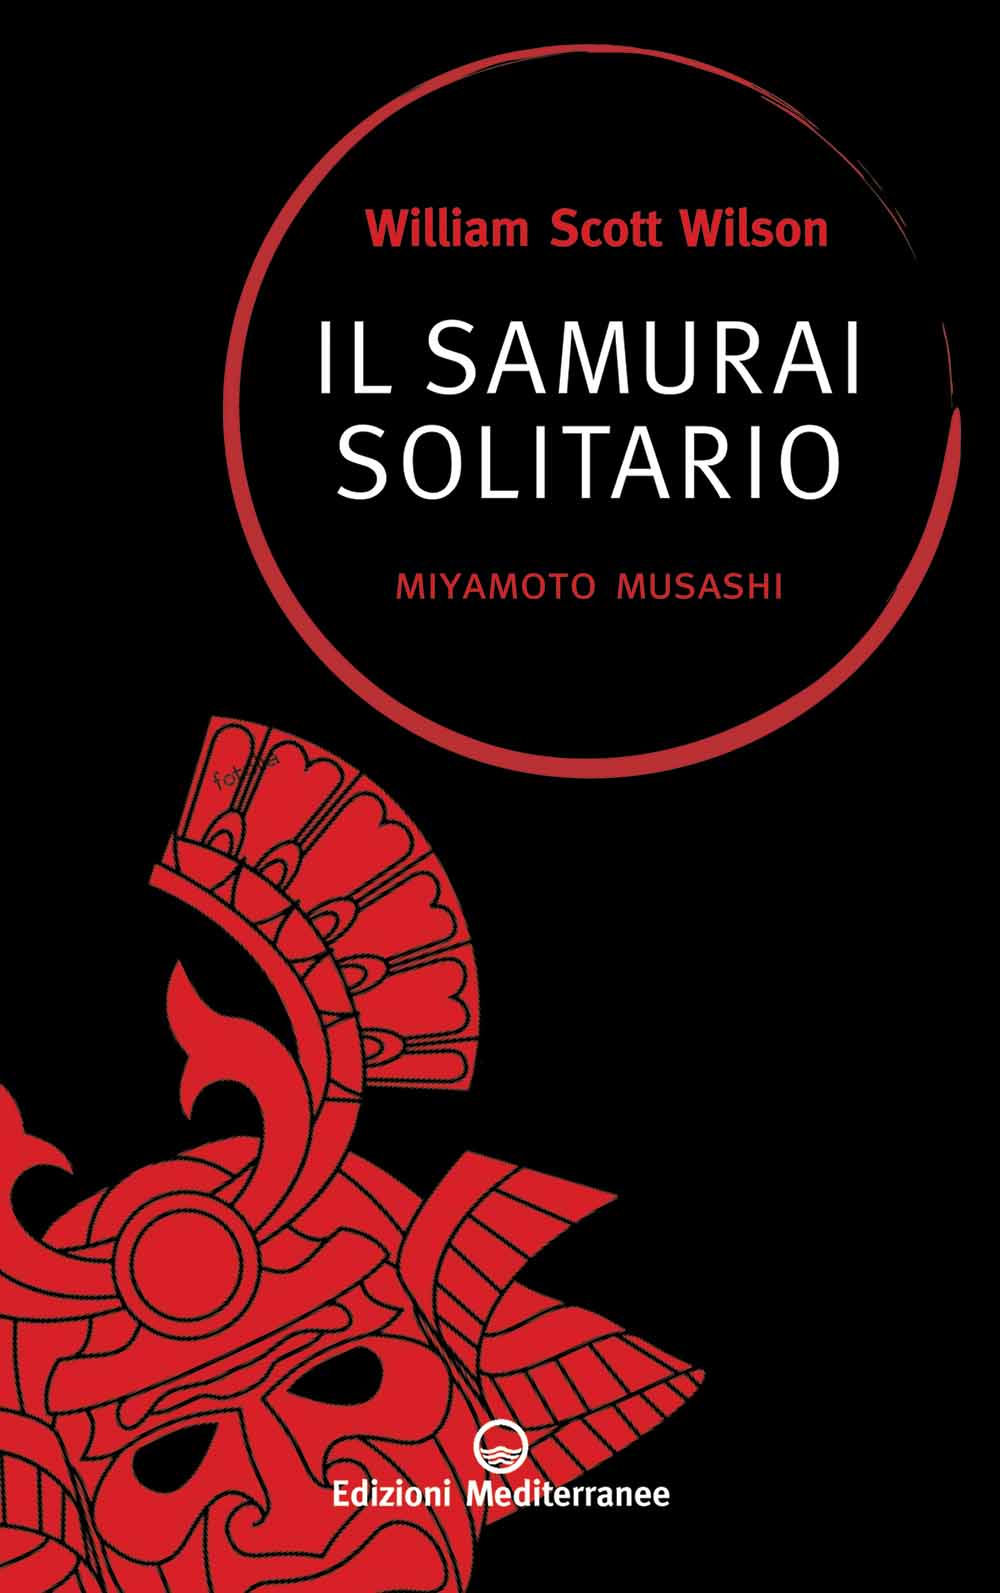 Libri Wilson William S. - Il Samurai Solitario. Miyamoto Musashi NUOVO SIGILLATO, EDIZIONE DEL 28/07/2010 SUBITO DISPONIBILE